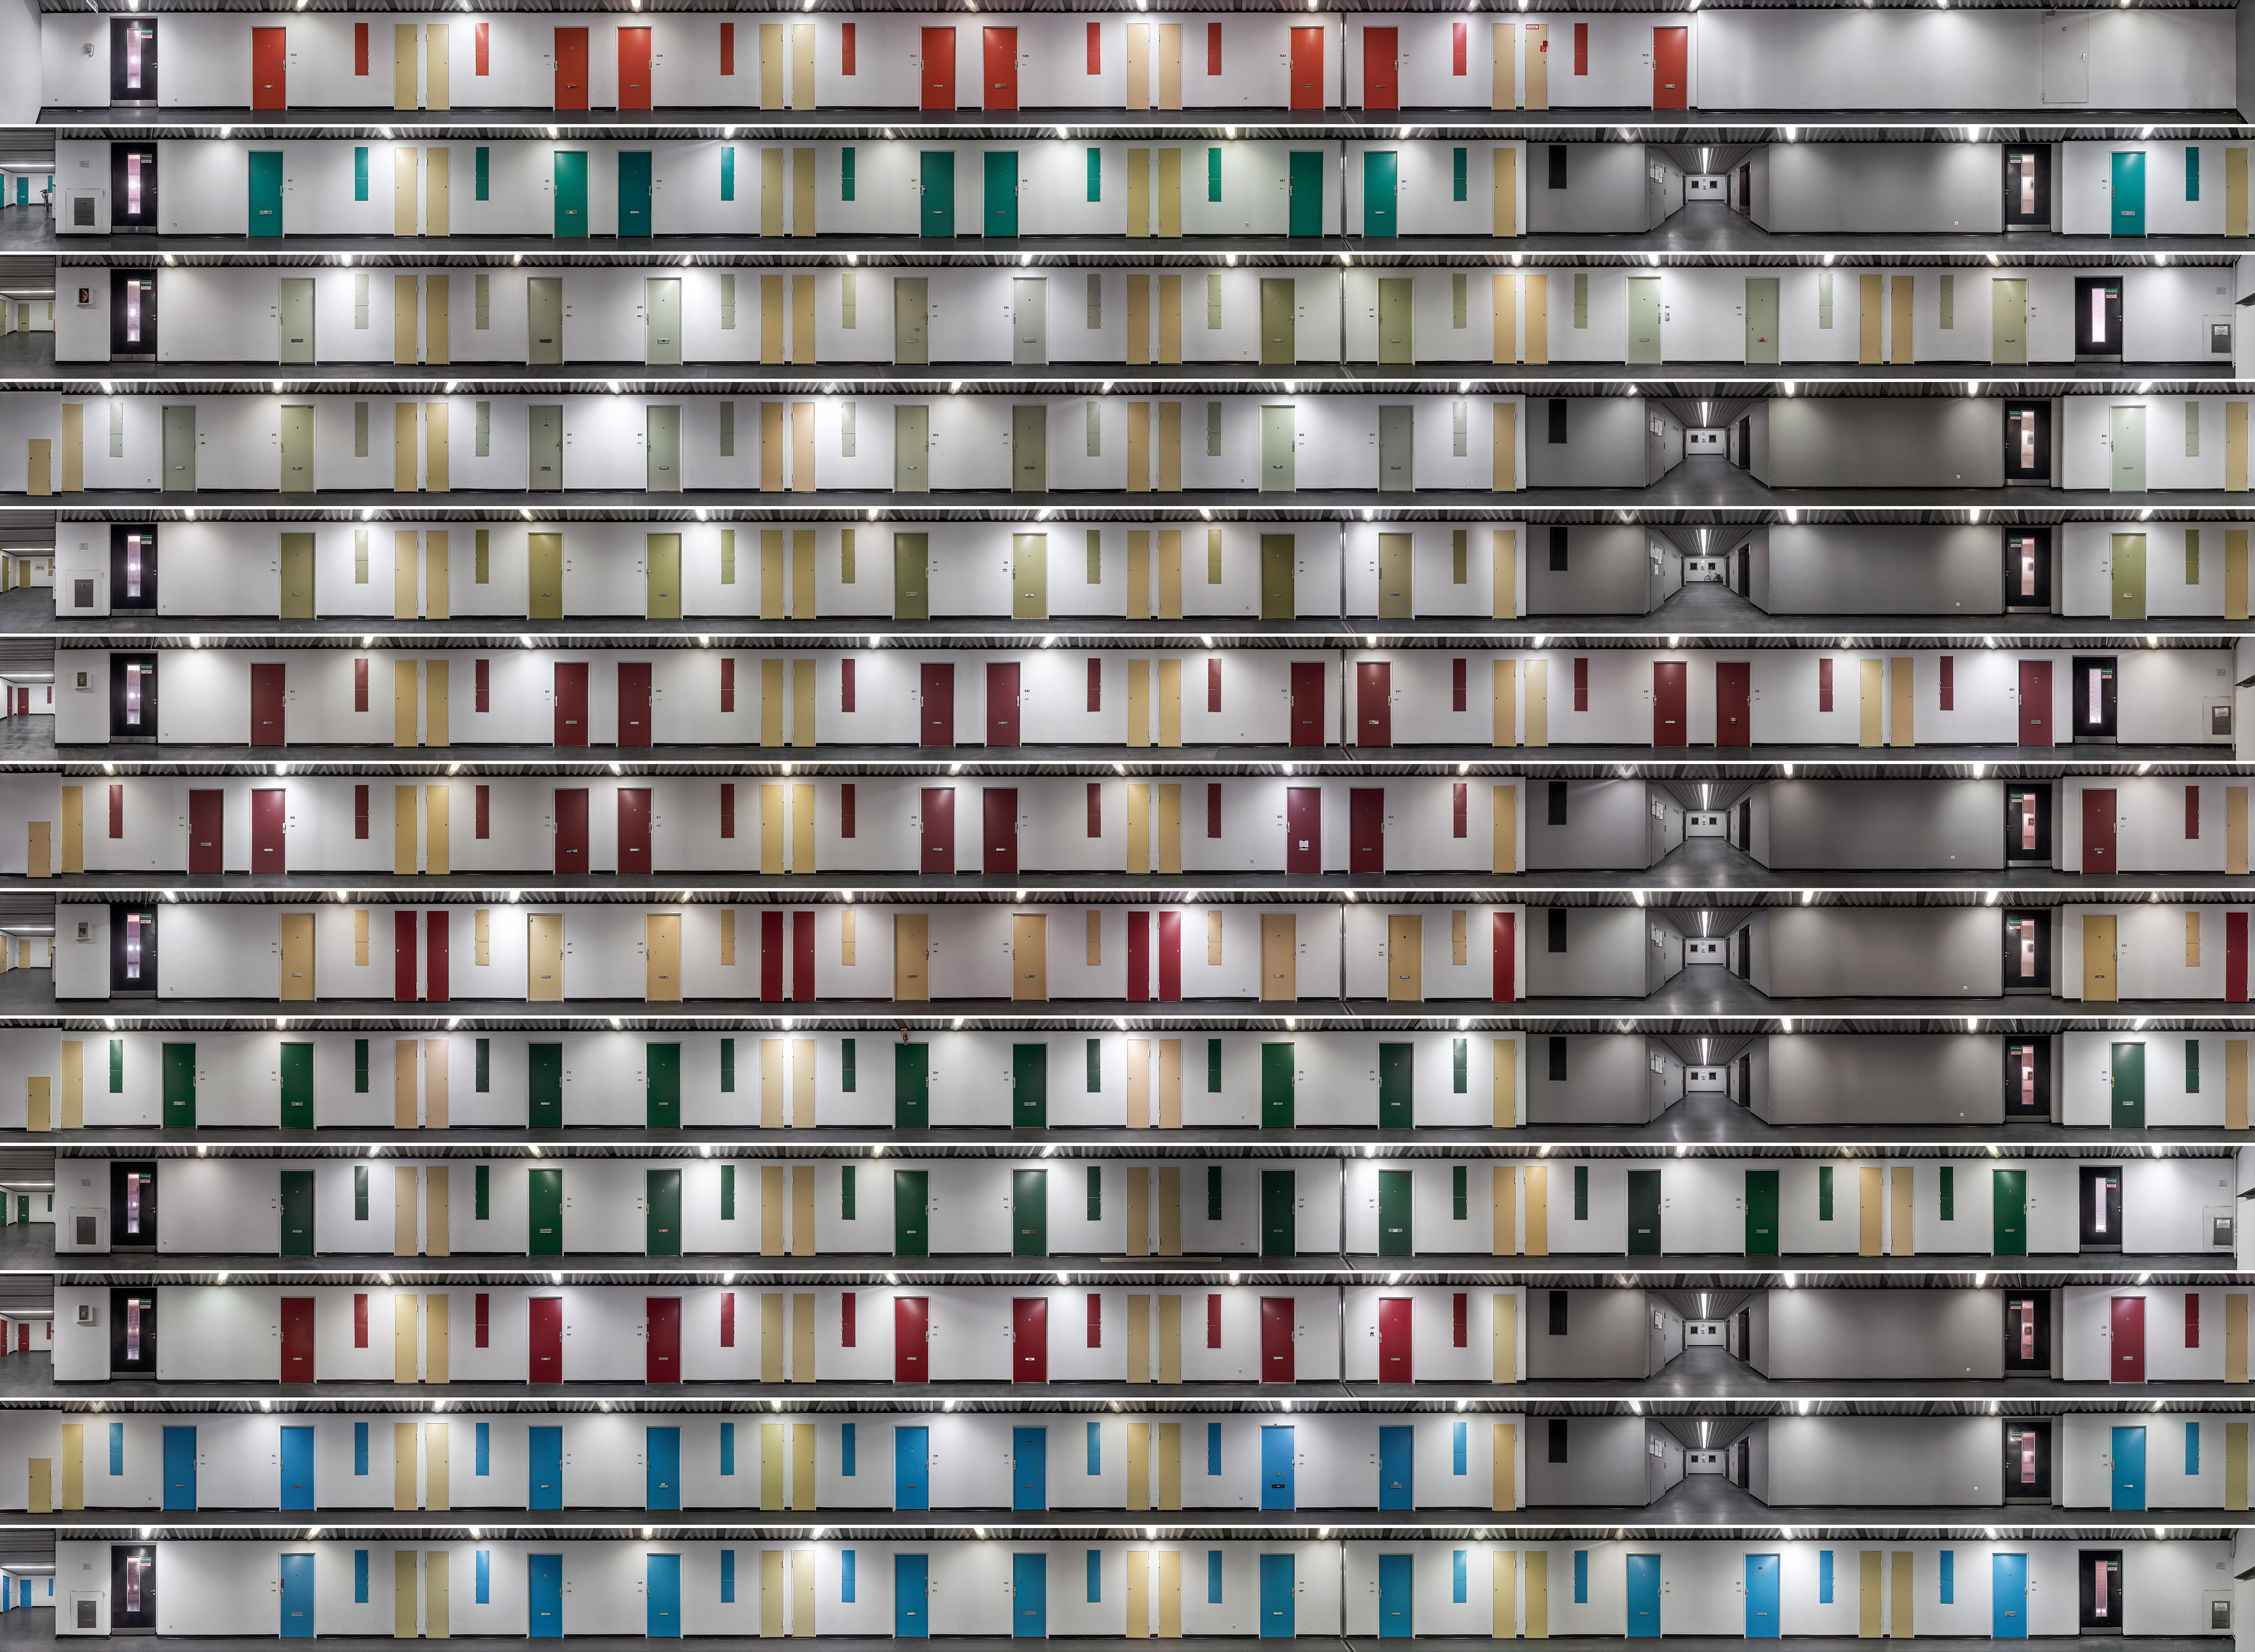 komposition mit zehn farben #1, 2014,160 x 215 cm,diptychon